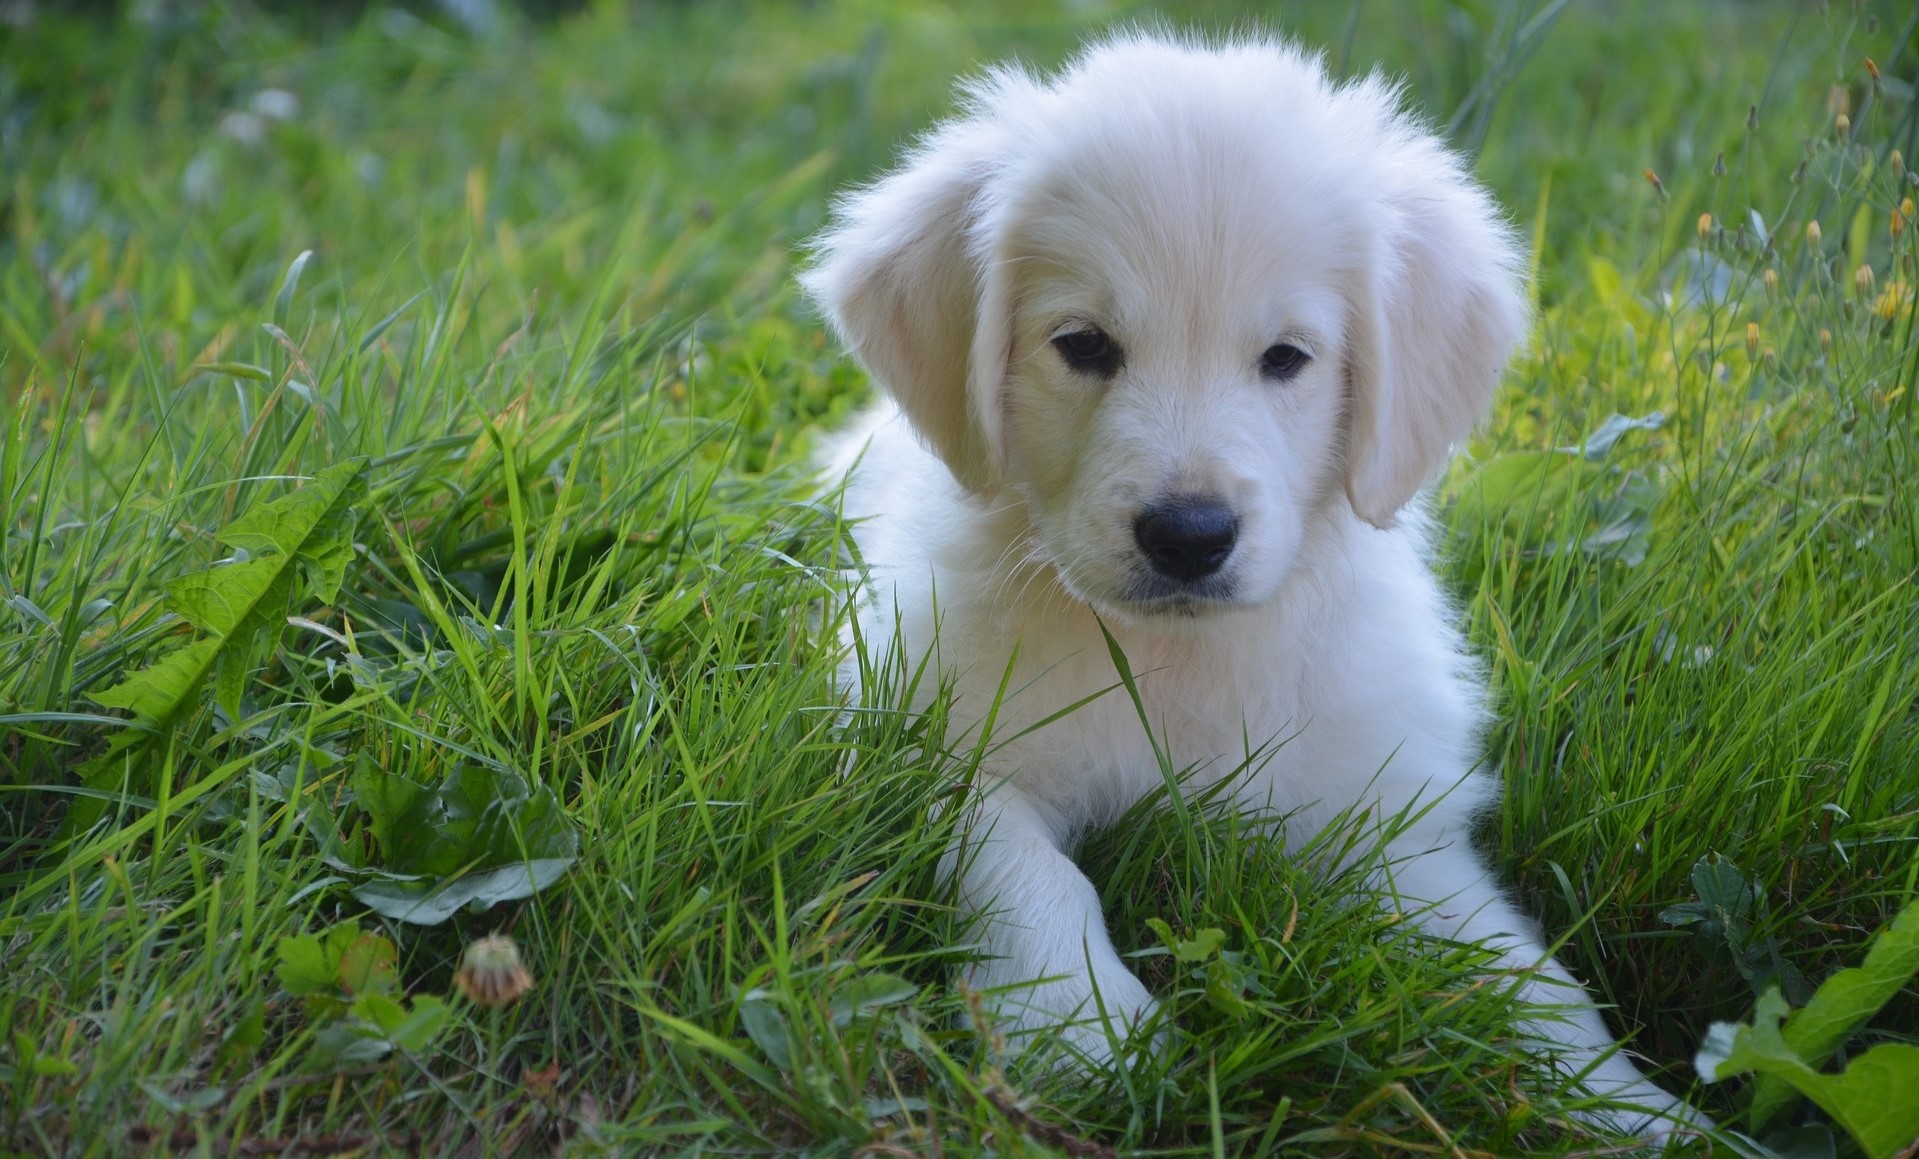 Golden Retriever bianco? I colori di un cucciolo: bianco, crema, oro o rosso